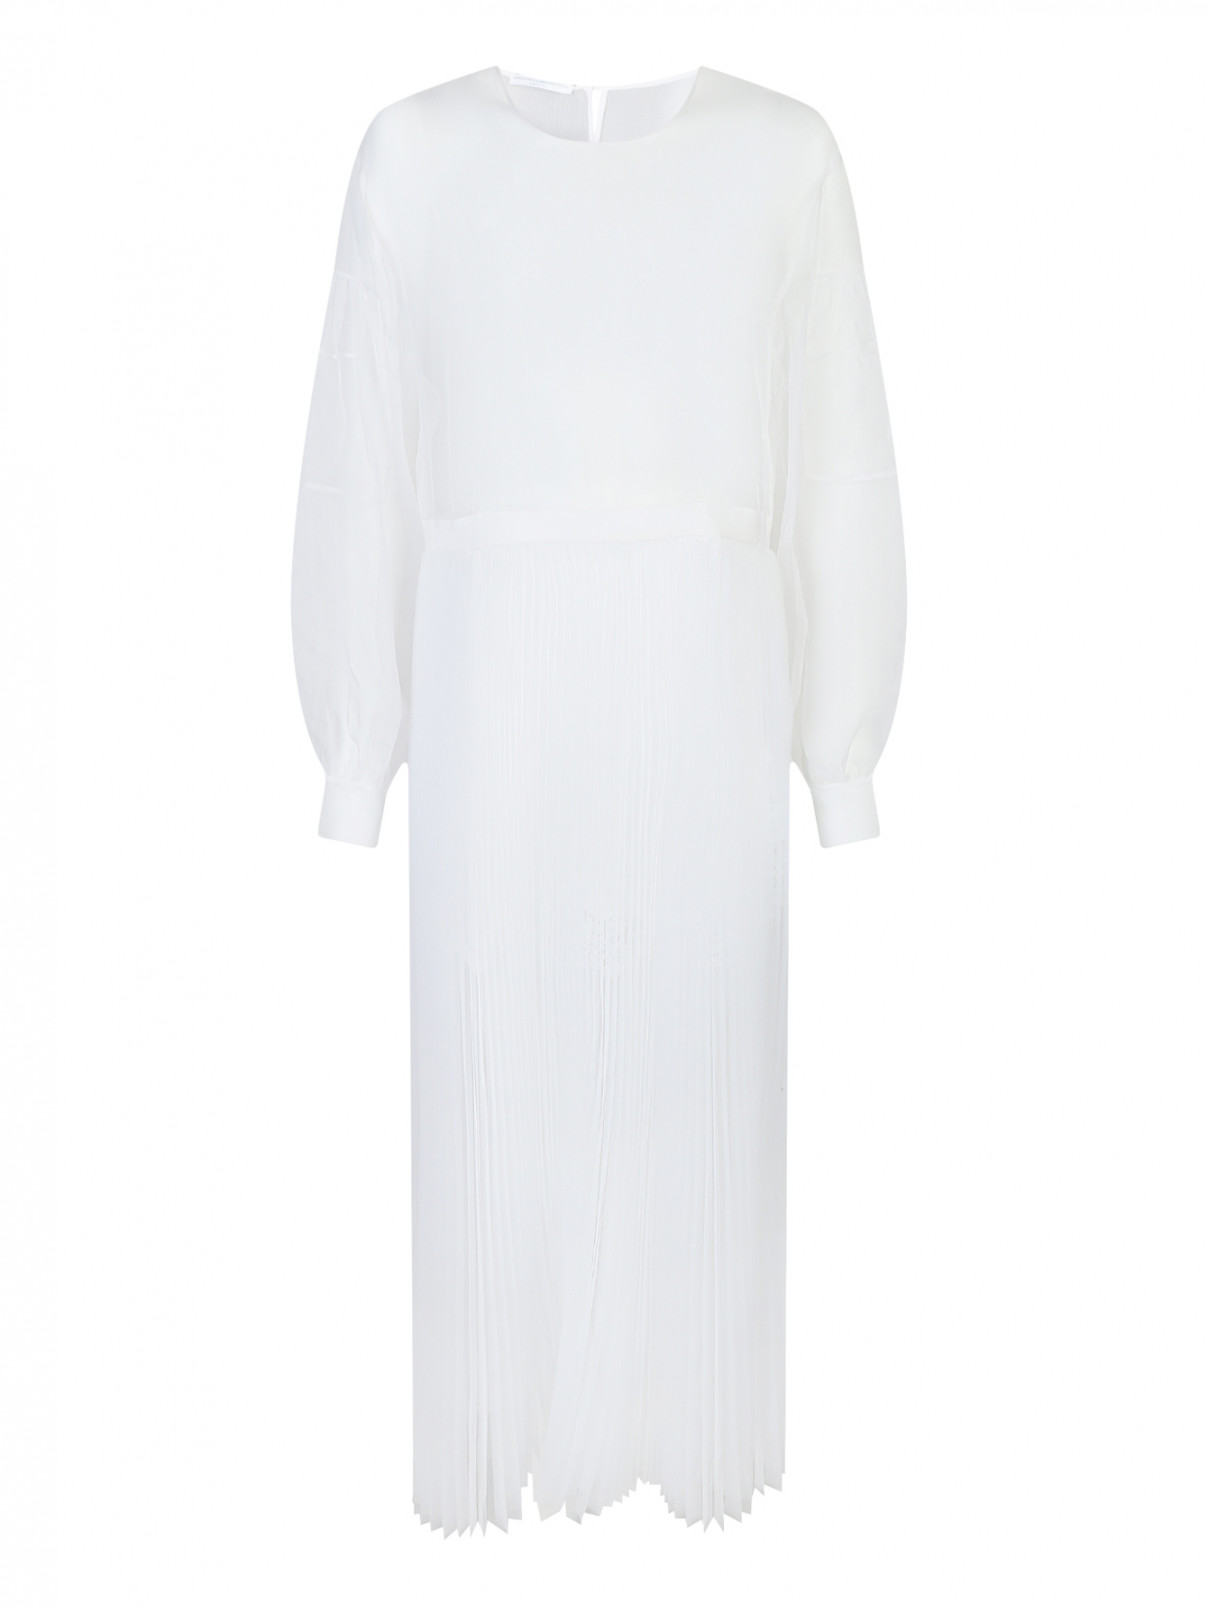 Полупрозрачное платье с плиссированной юбкой Ermanno Scervino  –  Общий вид  – Цвет:  Белый